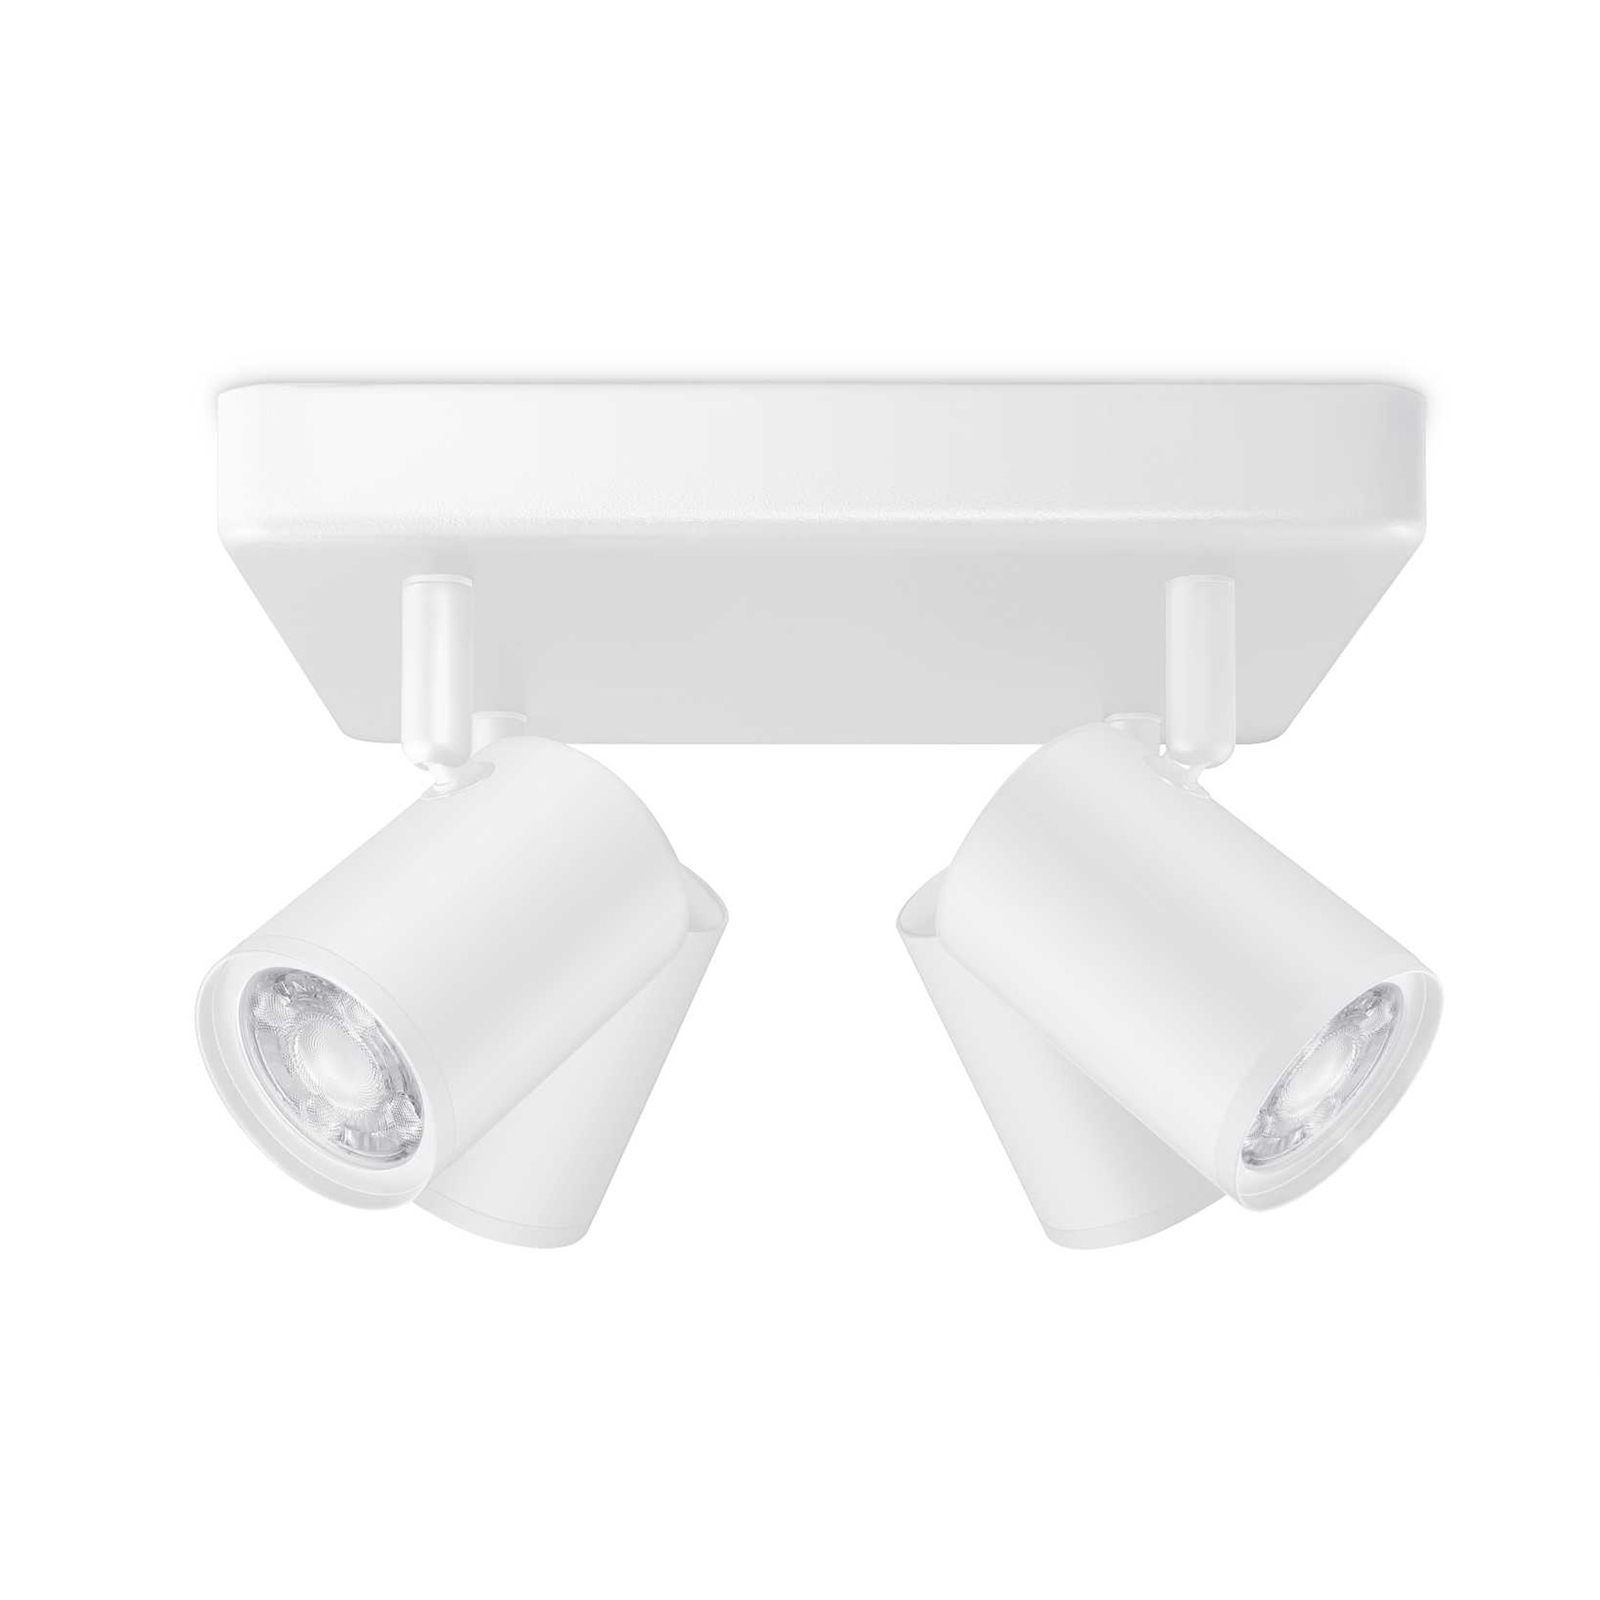 WiZ spot pour plafond LED Imageo, 4fl carré blanc